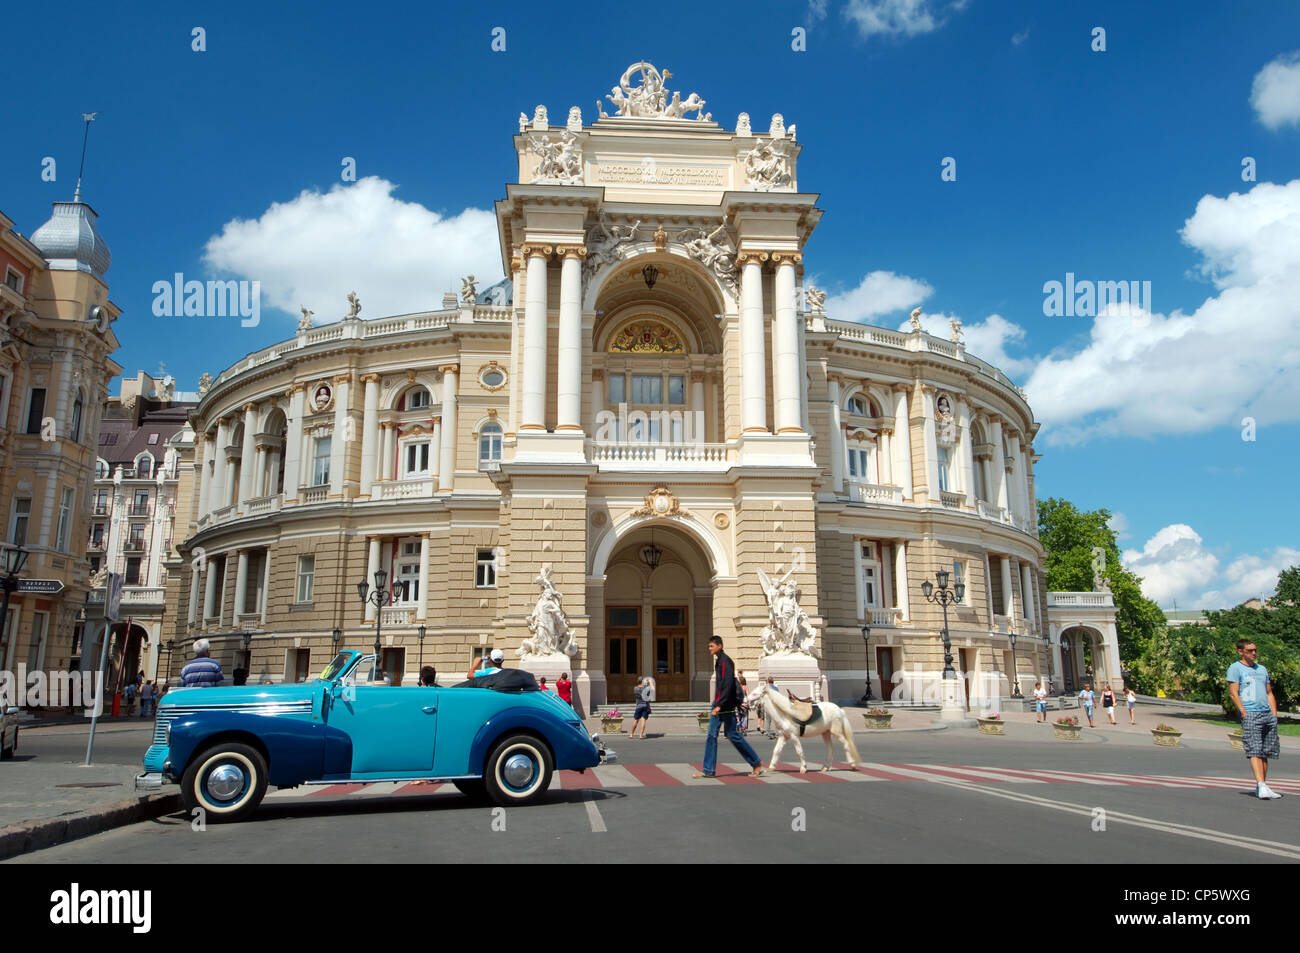 Opera and ballet theater, Odessa, Ukraine, Europe Stock Photo